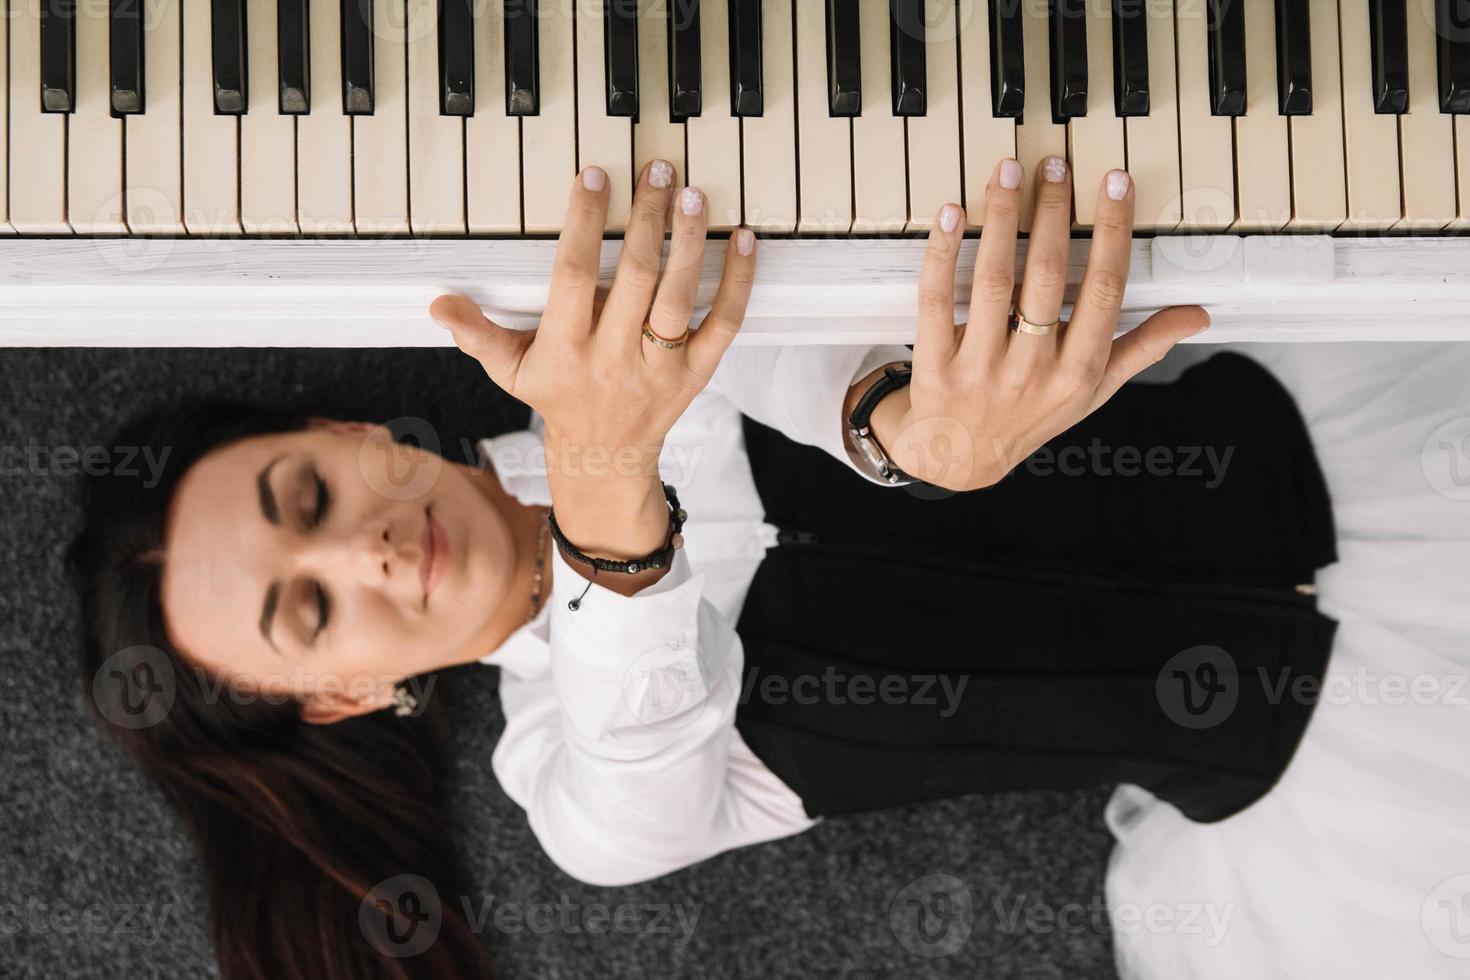 linda mulher vestida com um vestido branco com um espartilho preto encontra-se no chão perto de um piano branco tocando as teclas. lugar para texto ou publicidade. vista de cima foto